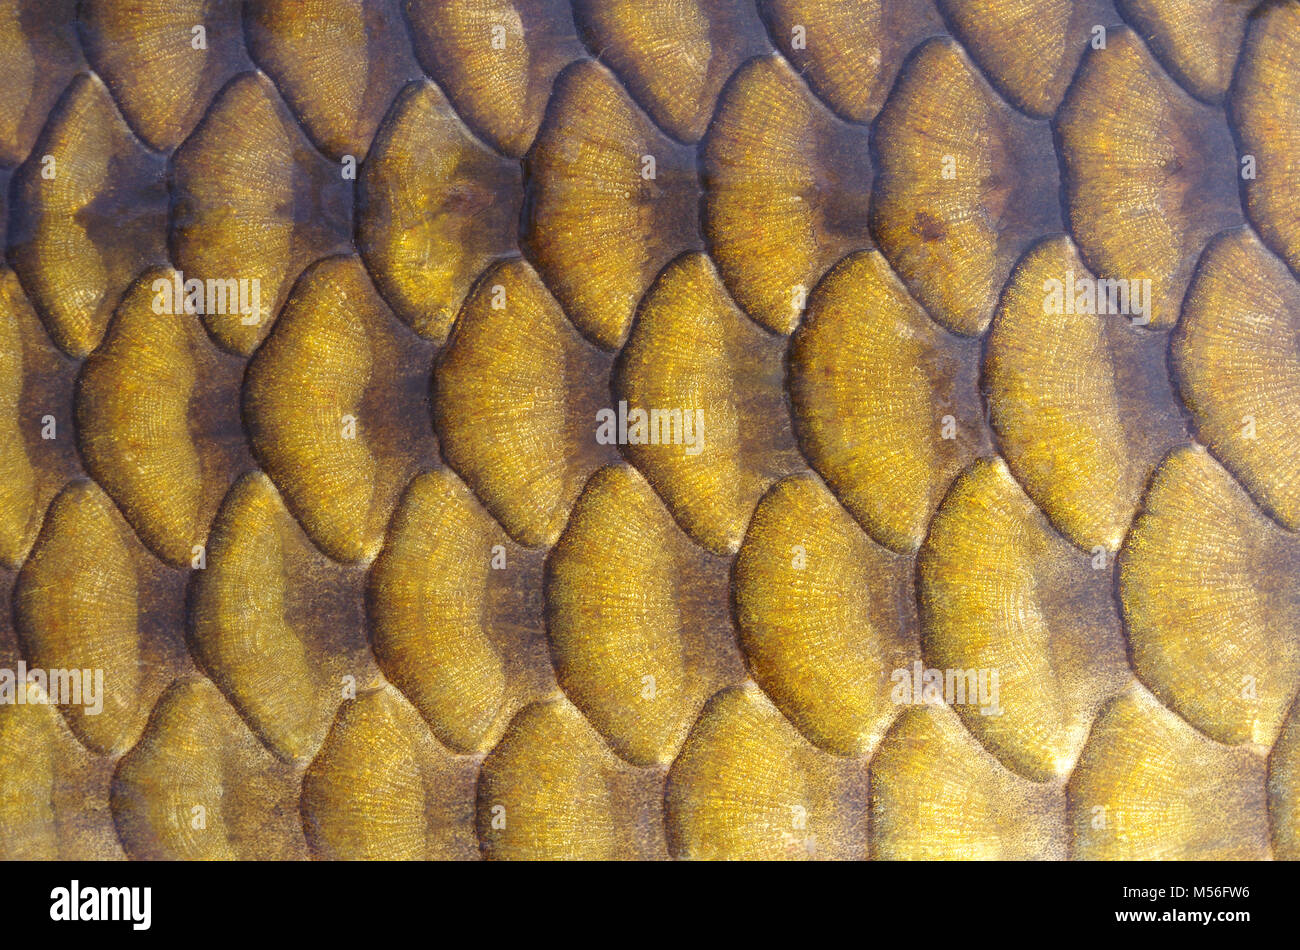 Fisch schuppen. Gold carp Skalen close-up Stockfoto